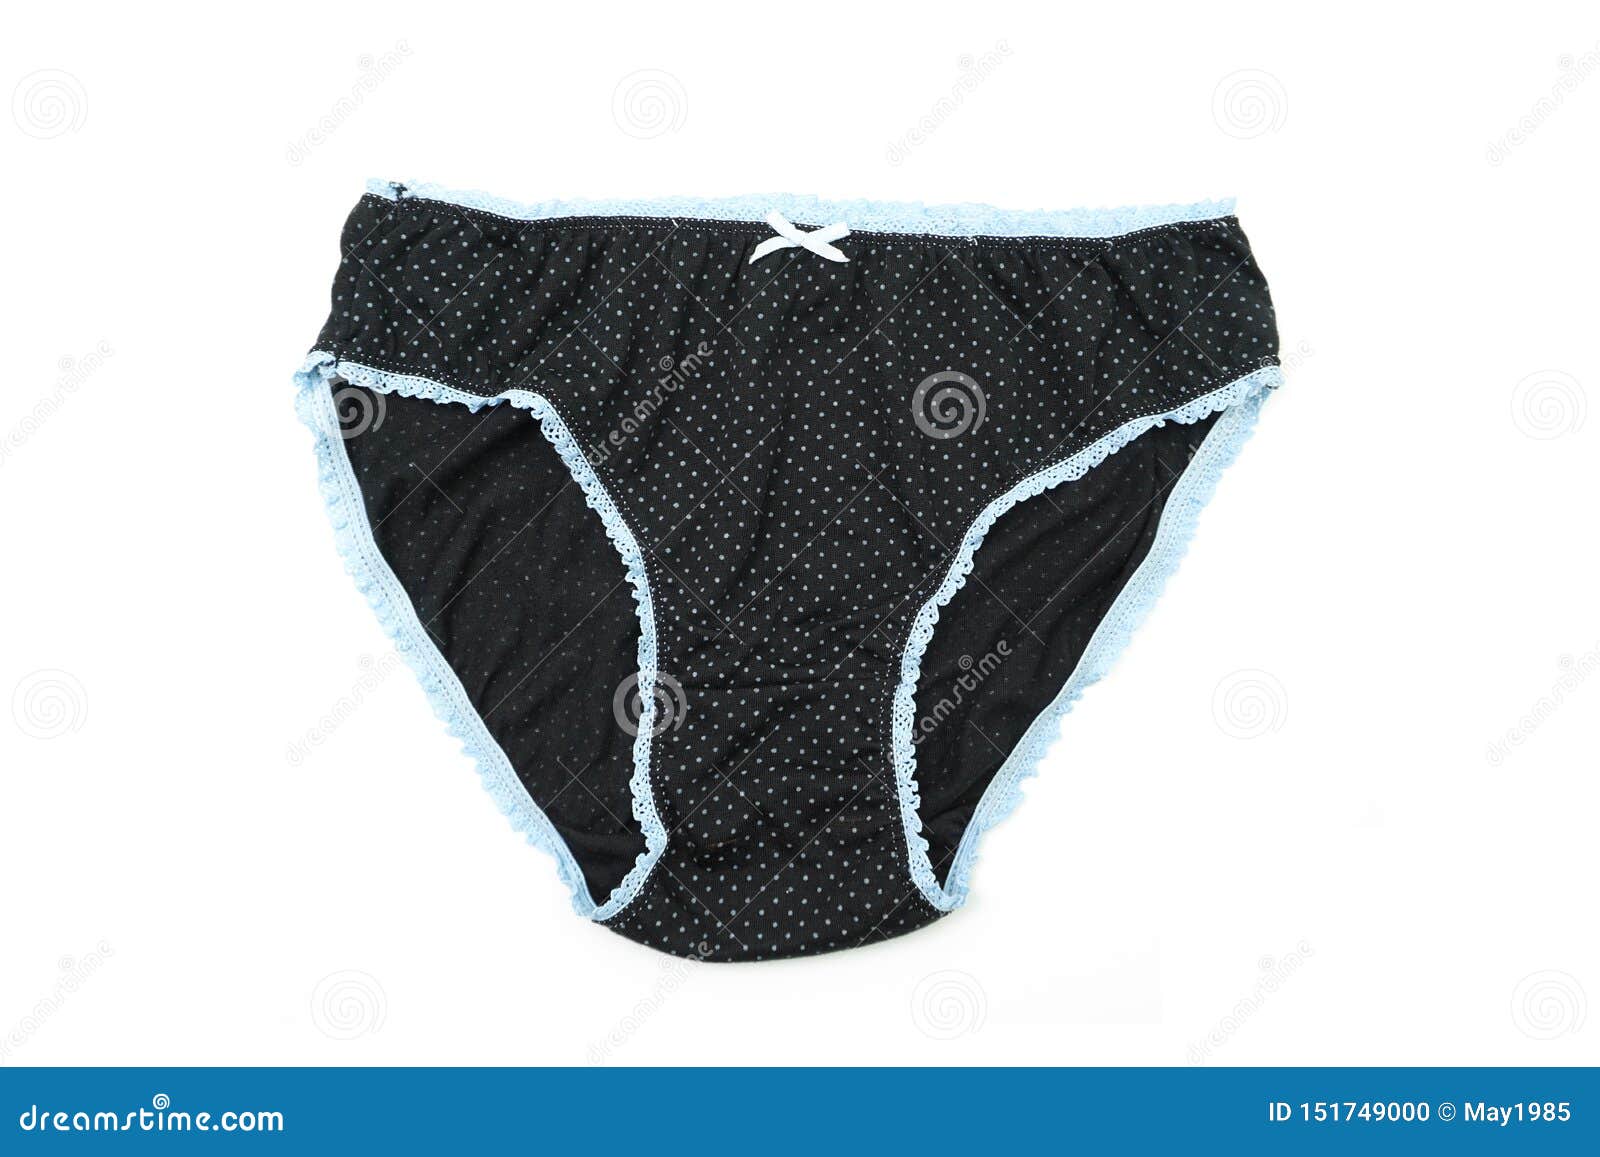 Black Panty Isolated on White Background Stock Photo - Image of health ...